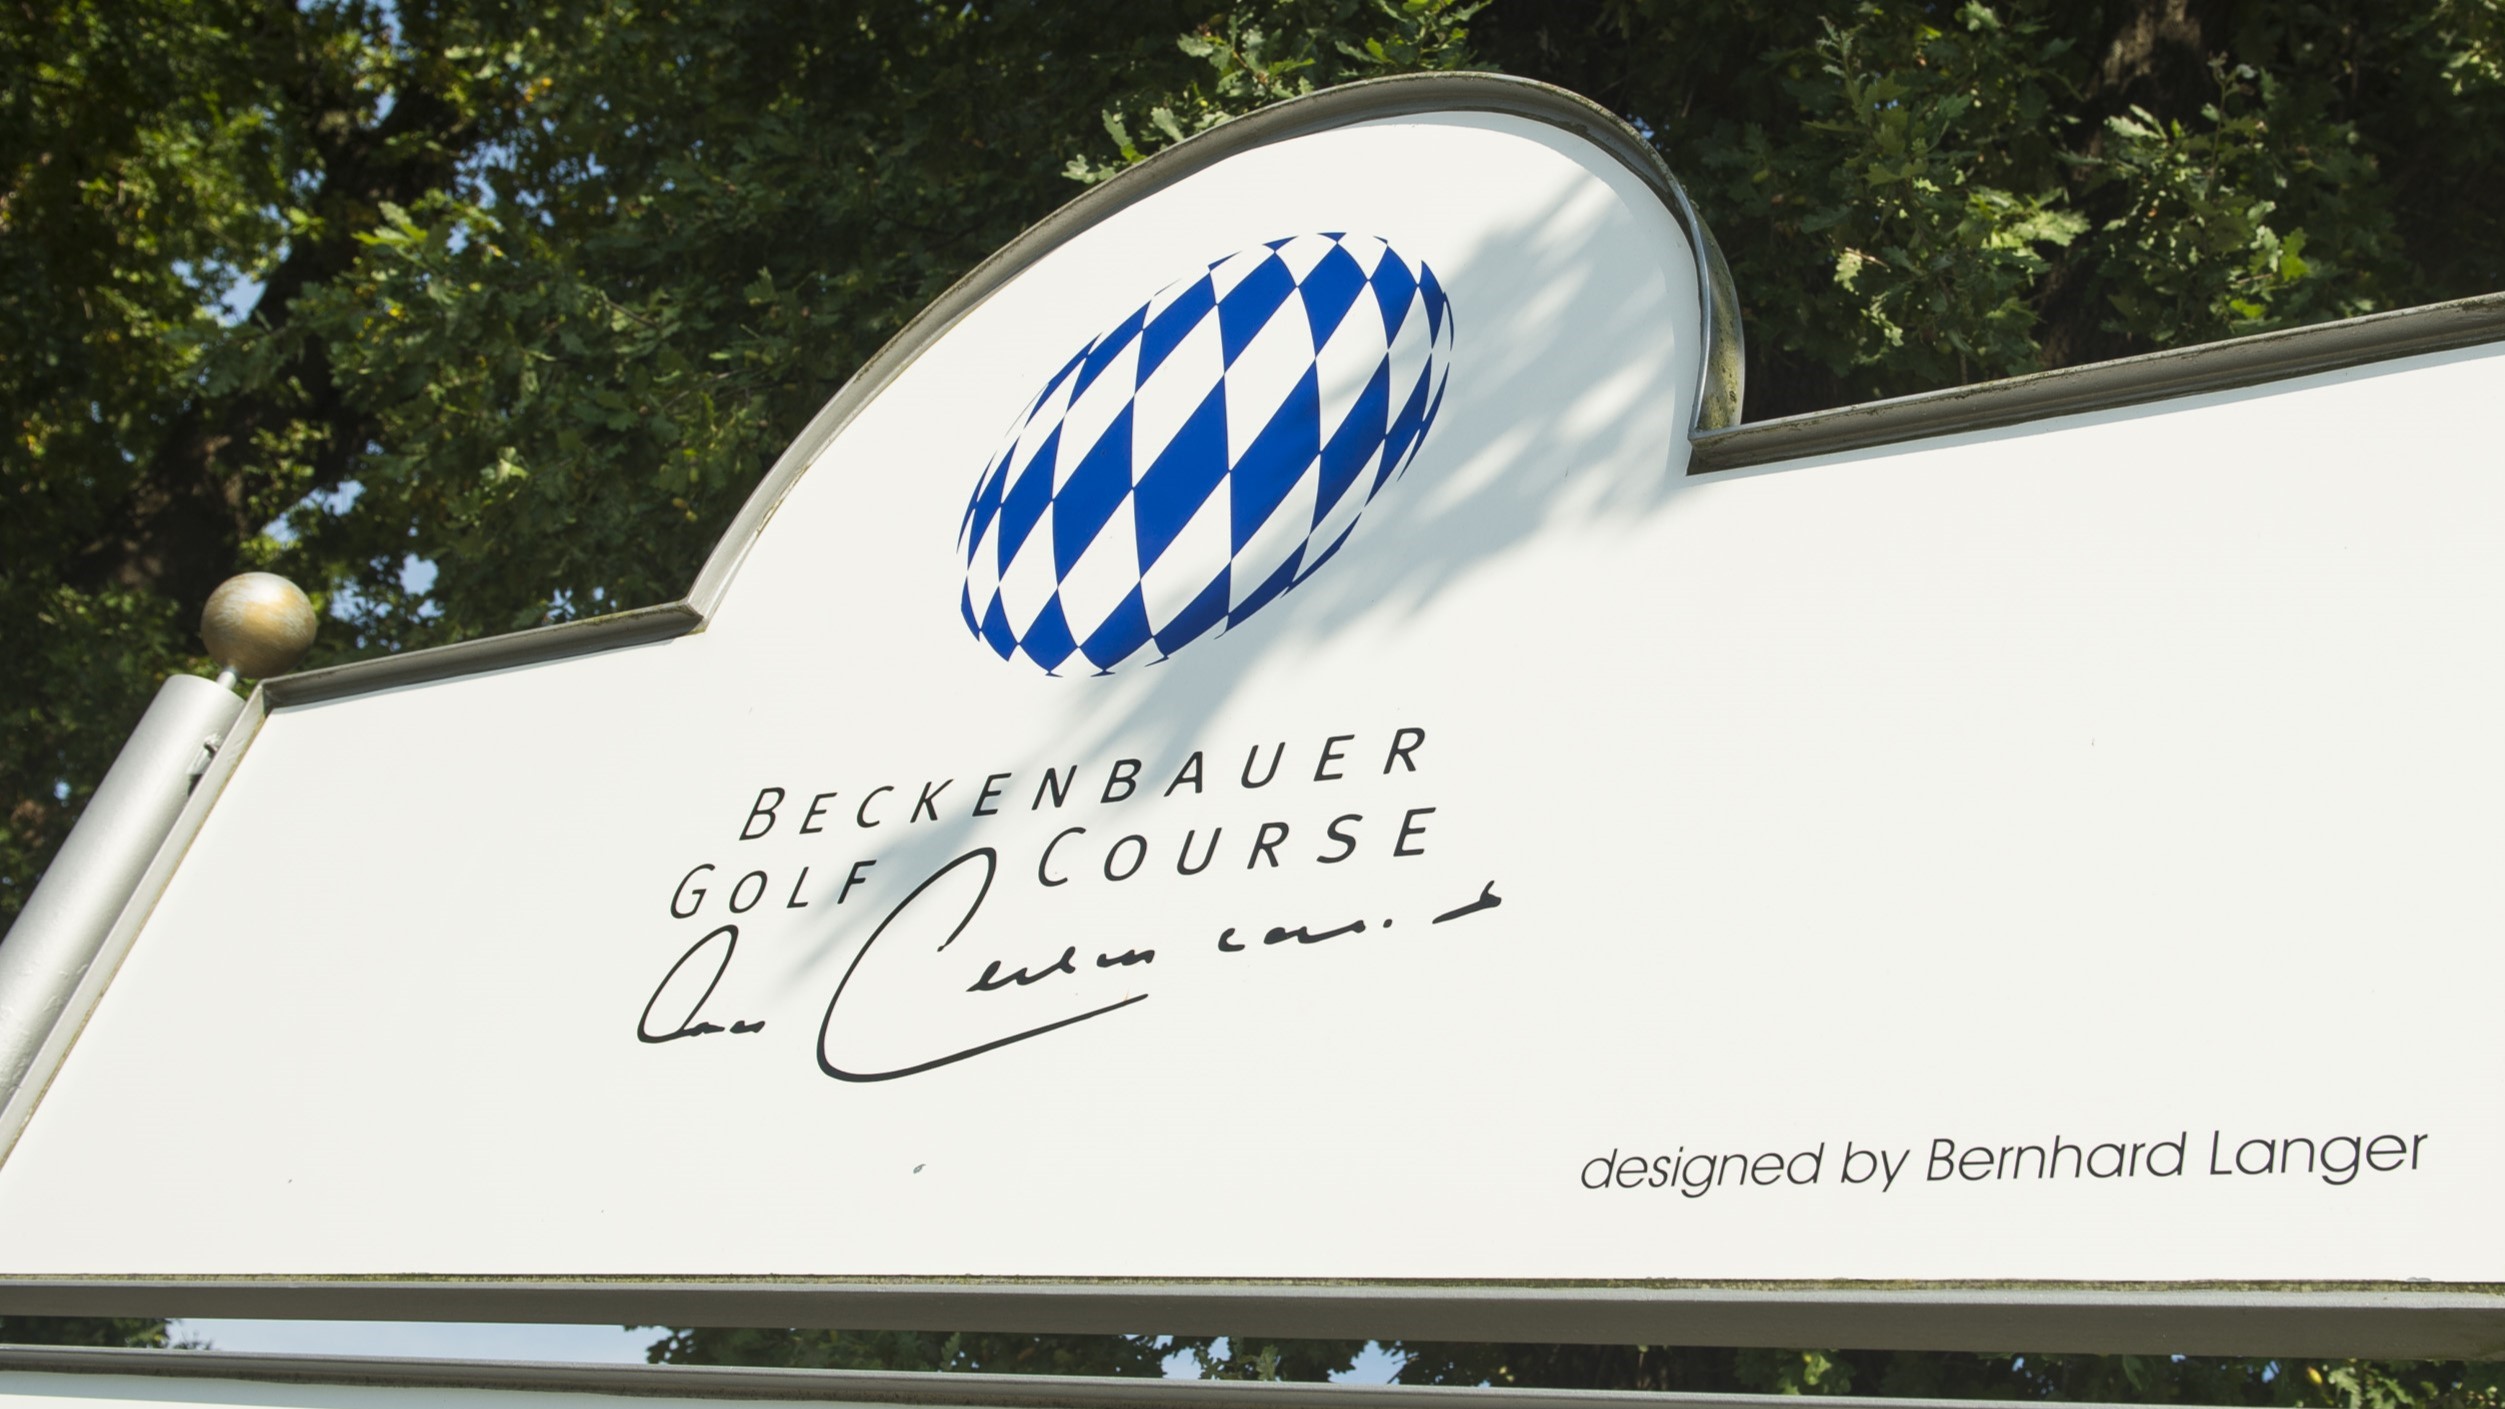 Stattfinden wird der Bastian Schweinsteiger-Cup vom 19. bis 21. Juli auf dem Beckenbauer Course (und dem benachbarten Porsche Course) in Bad Griesbach.